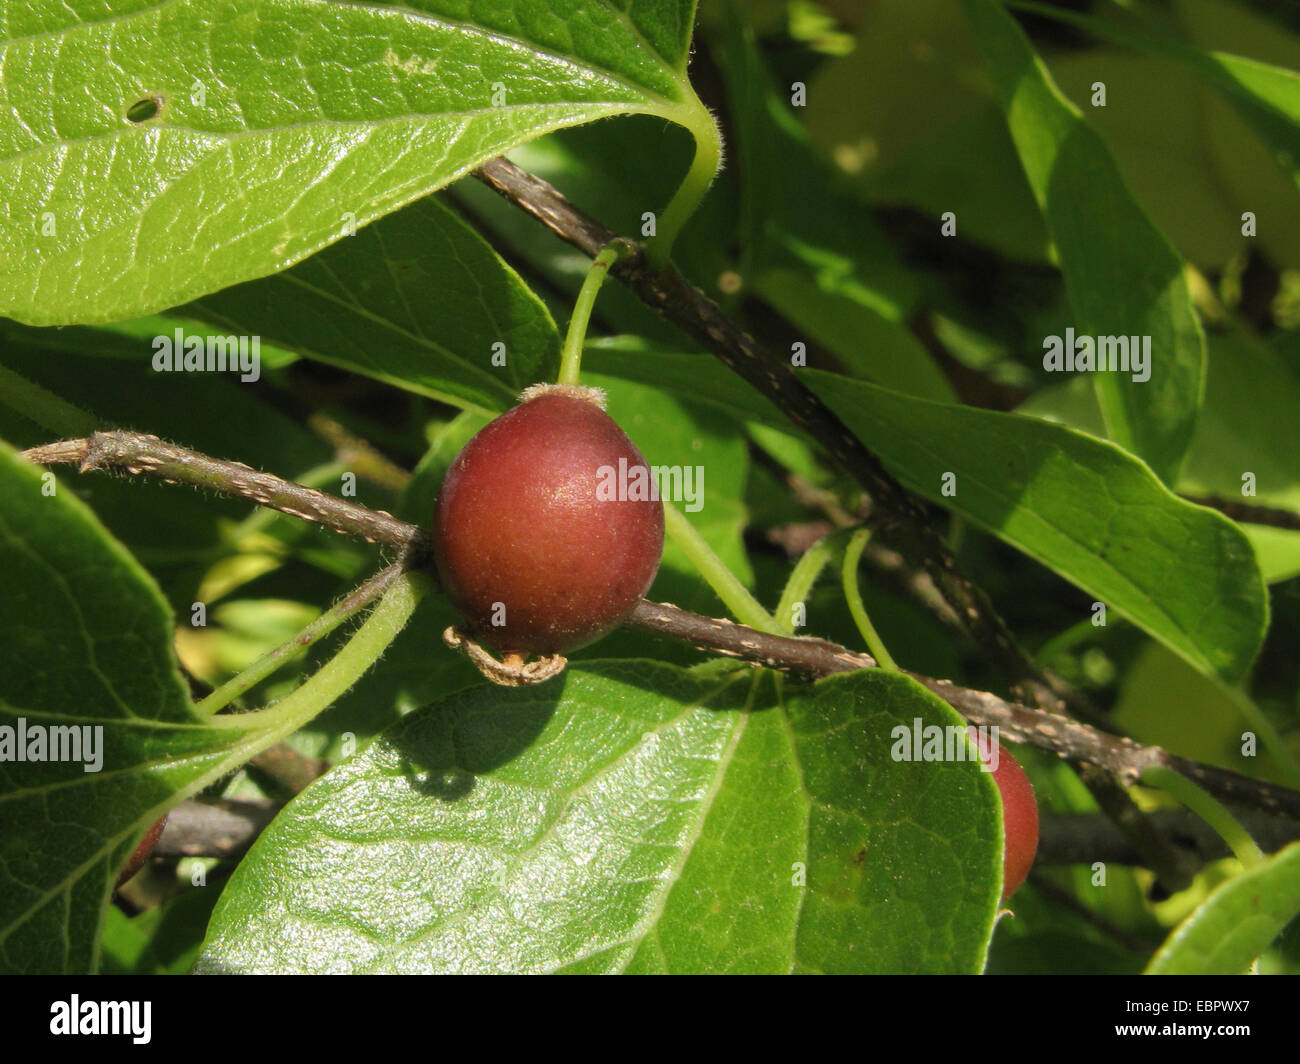 European hackberry, nettle tree (Celtis australis), fruit Stock Photo